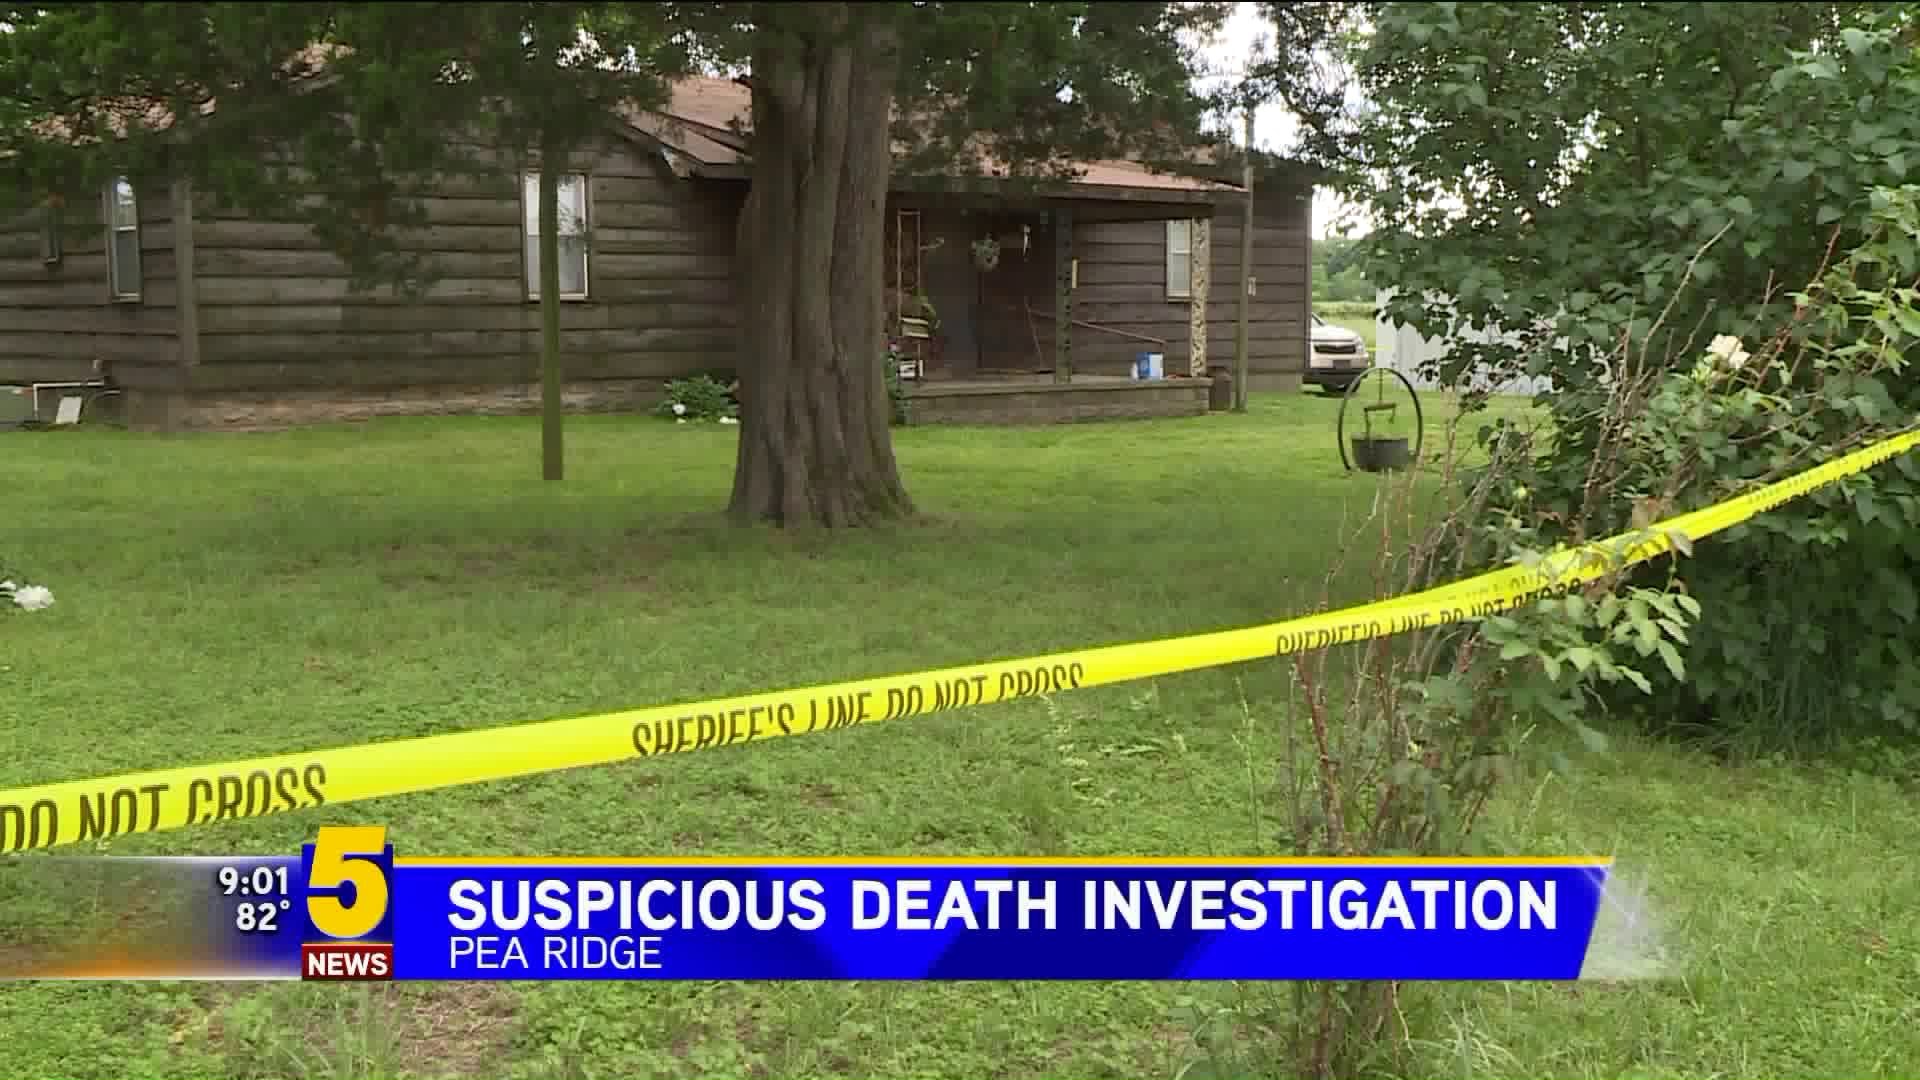 Pea Ridge Suspicious Death Investigation